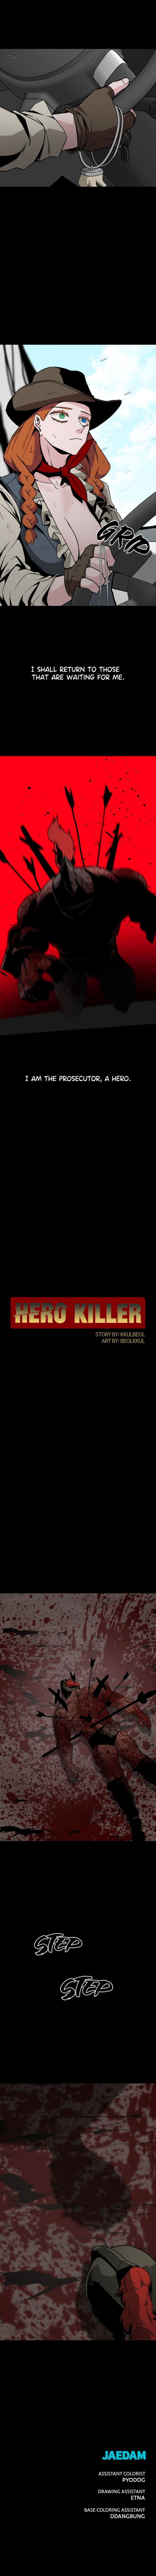 hero_killer_74_10